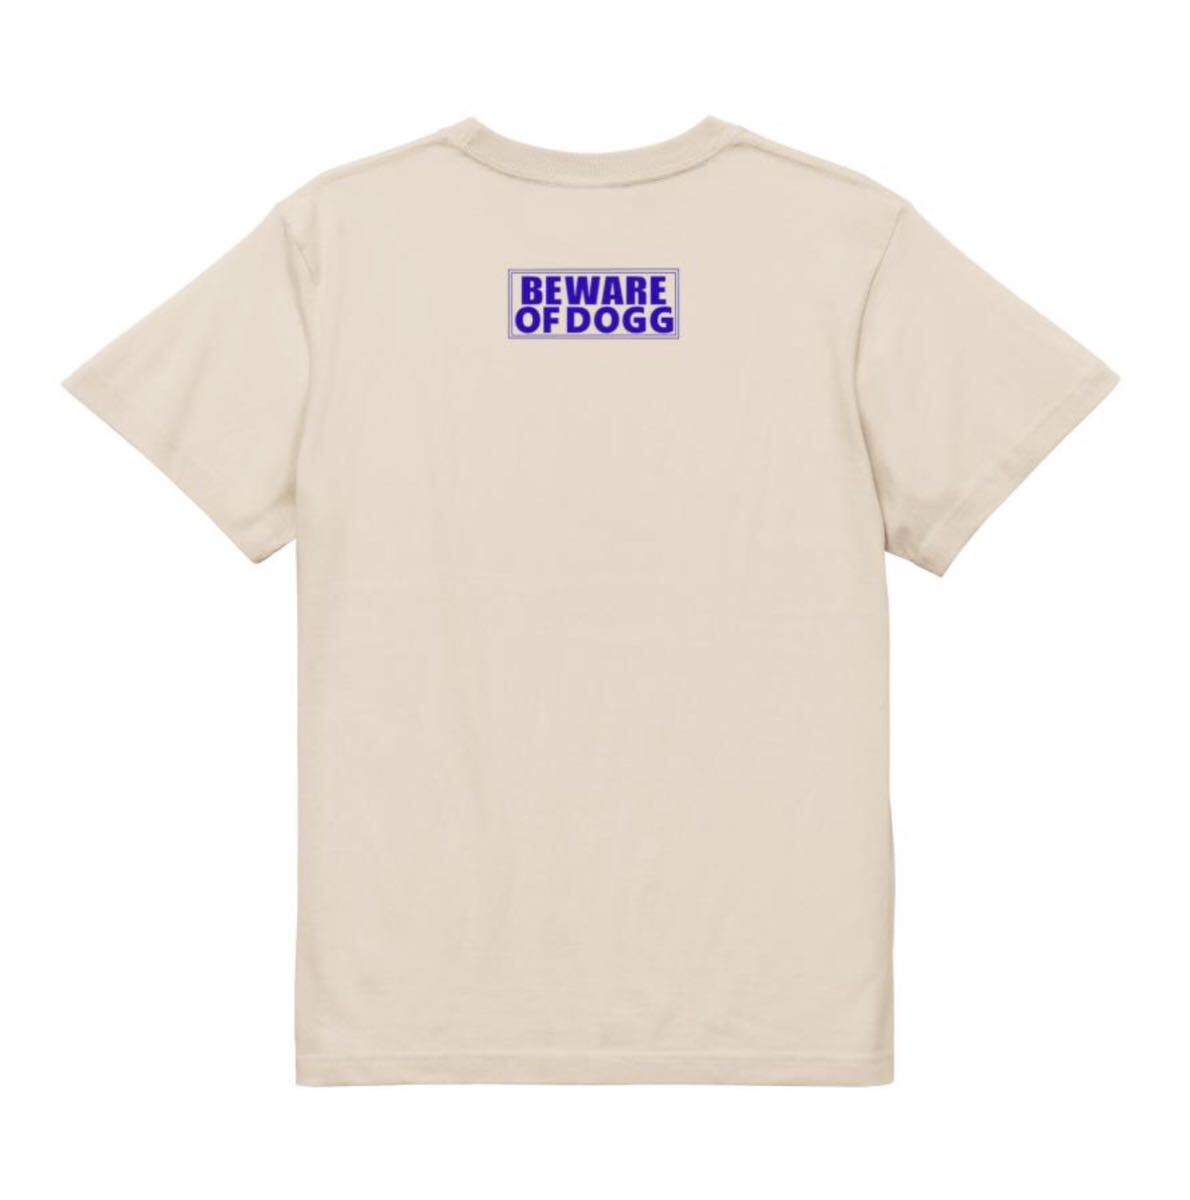 スヌープドッグ BE WARE OF DOGG SnoopDogg Tシャツ 半袖 ナチュラルMサイズ 90年代 ヒップホップ ラップ ビンテージ プリント ストリート